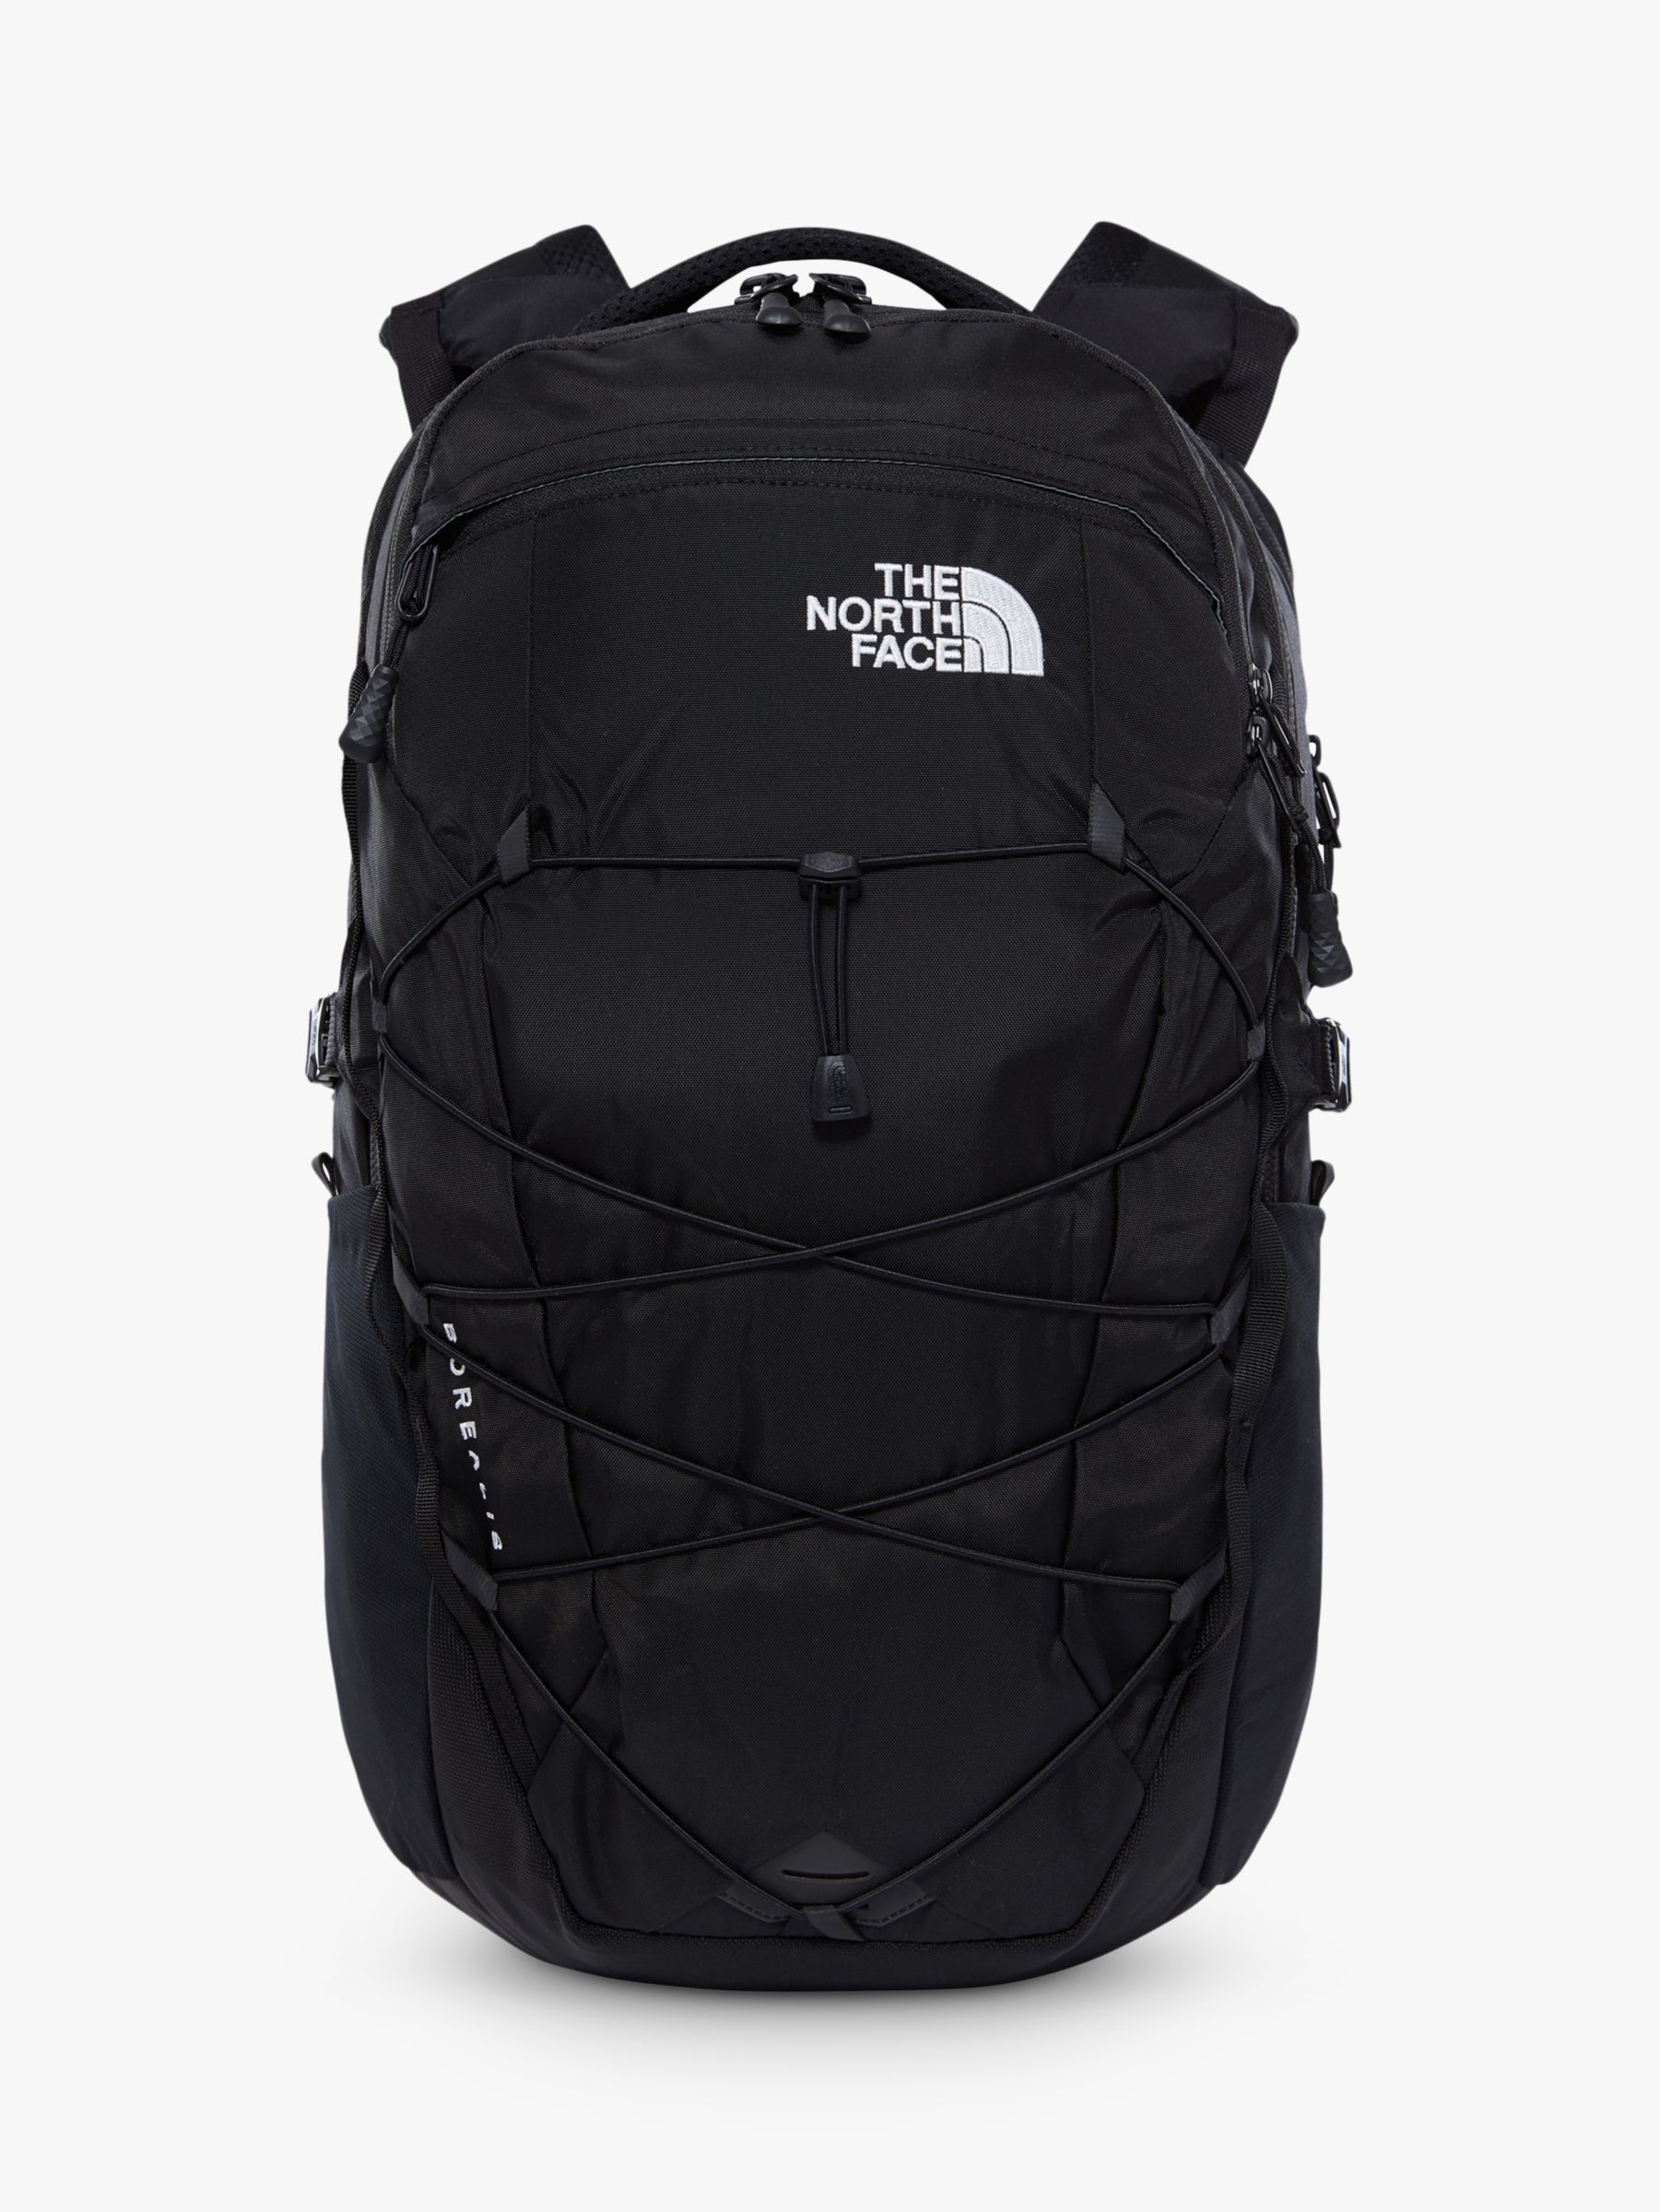 borealis backpack black